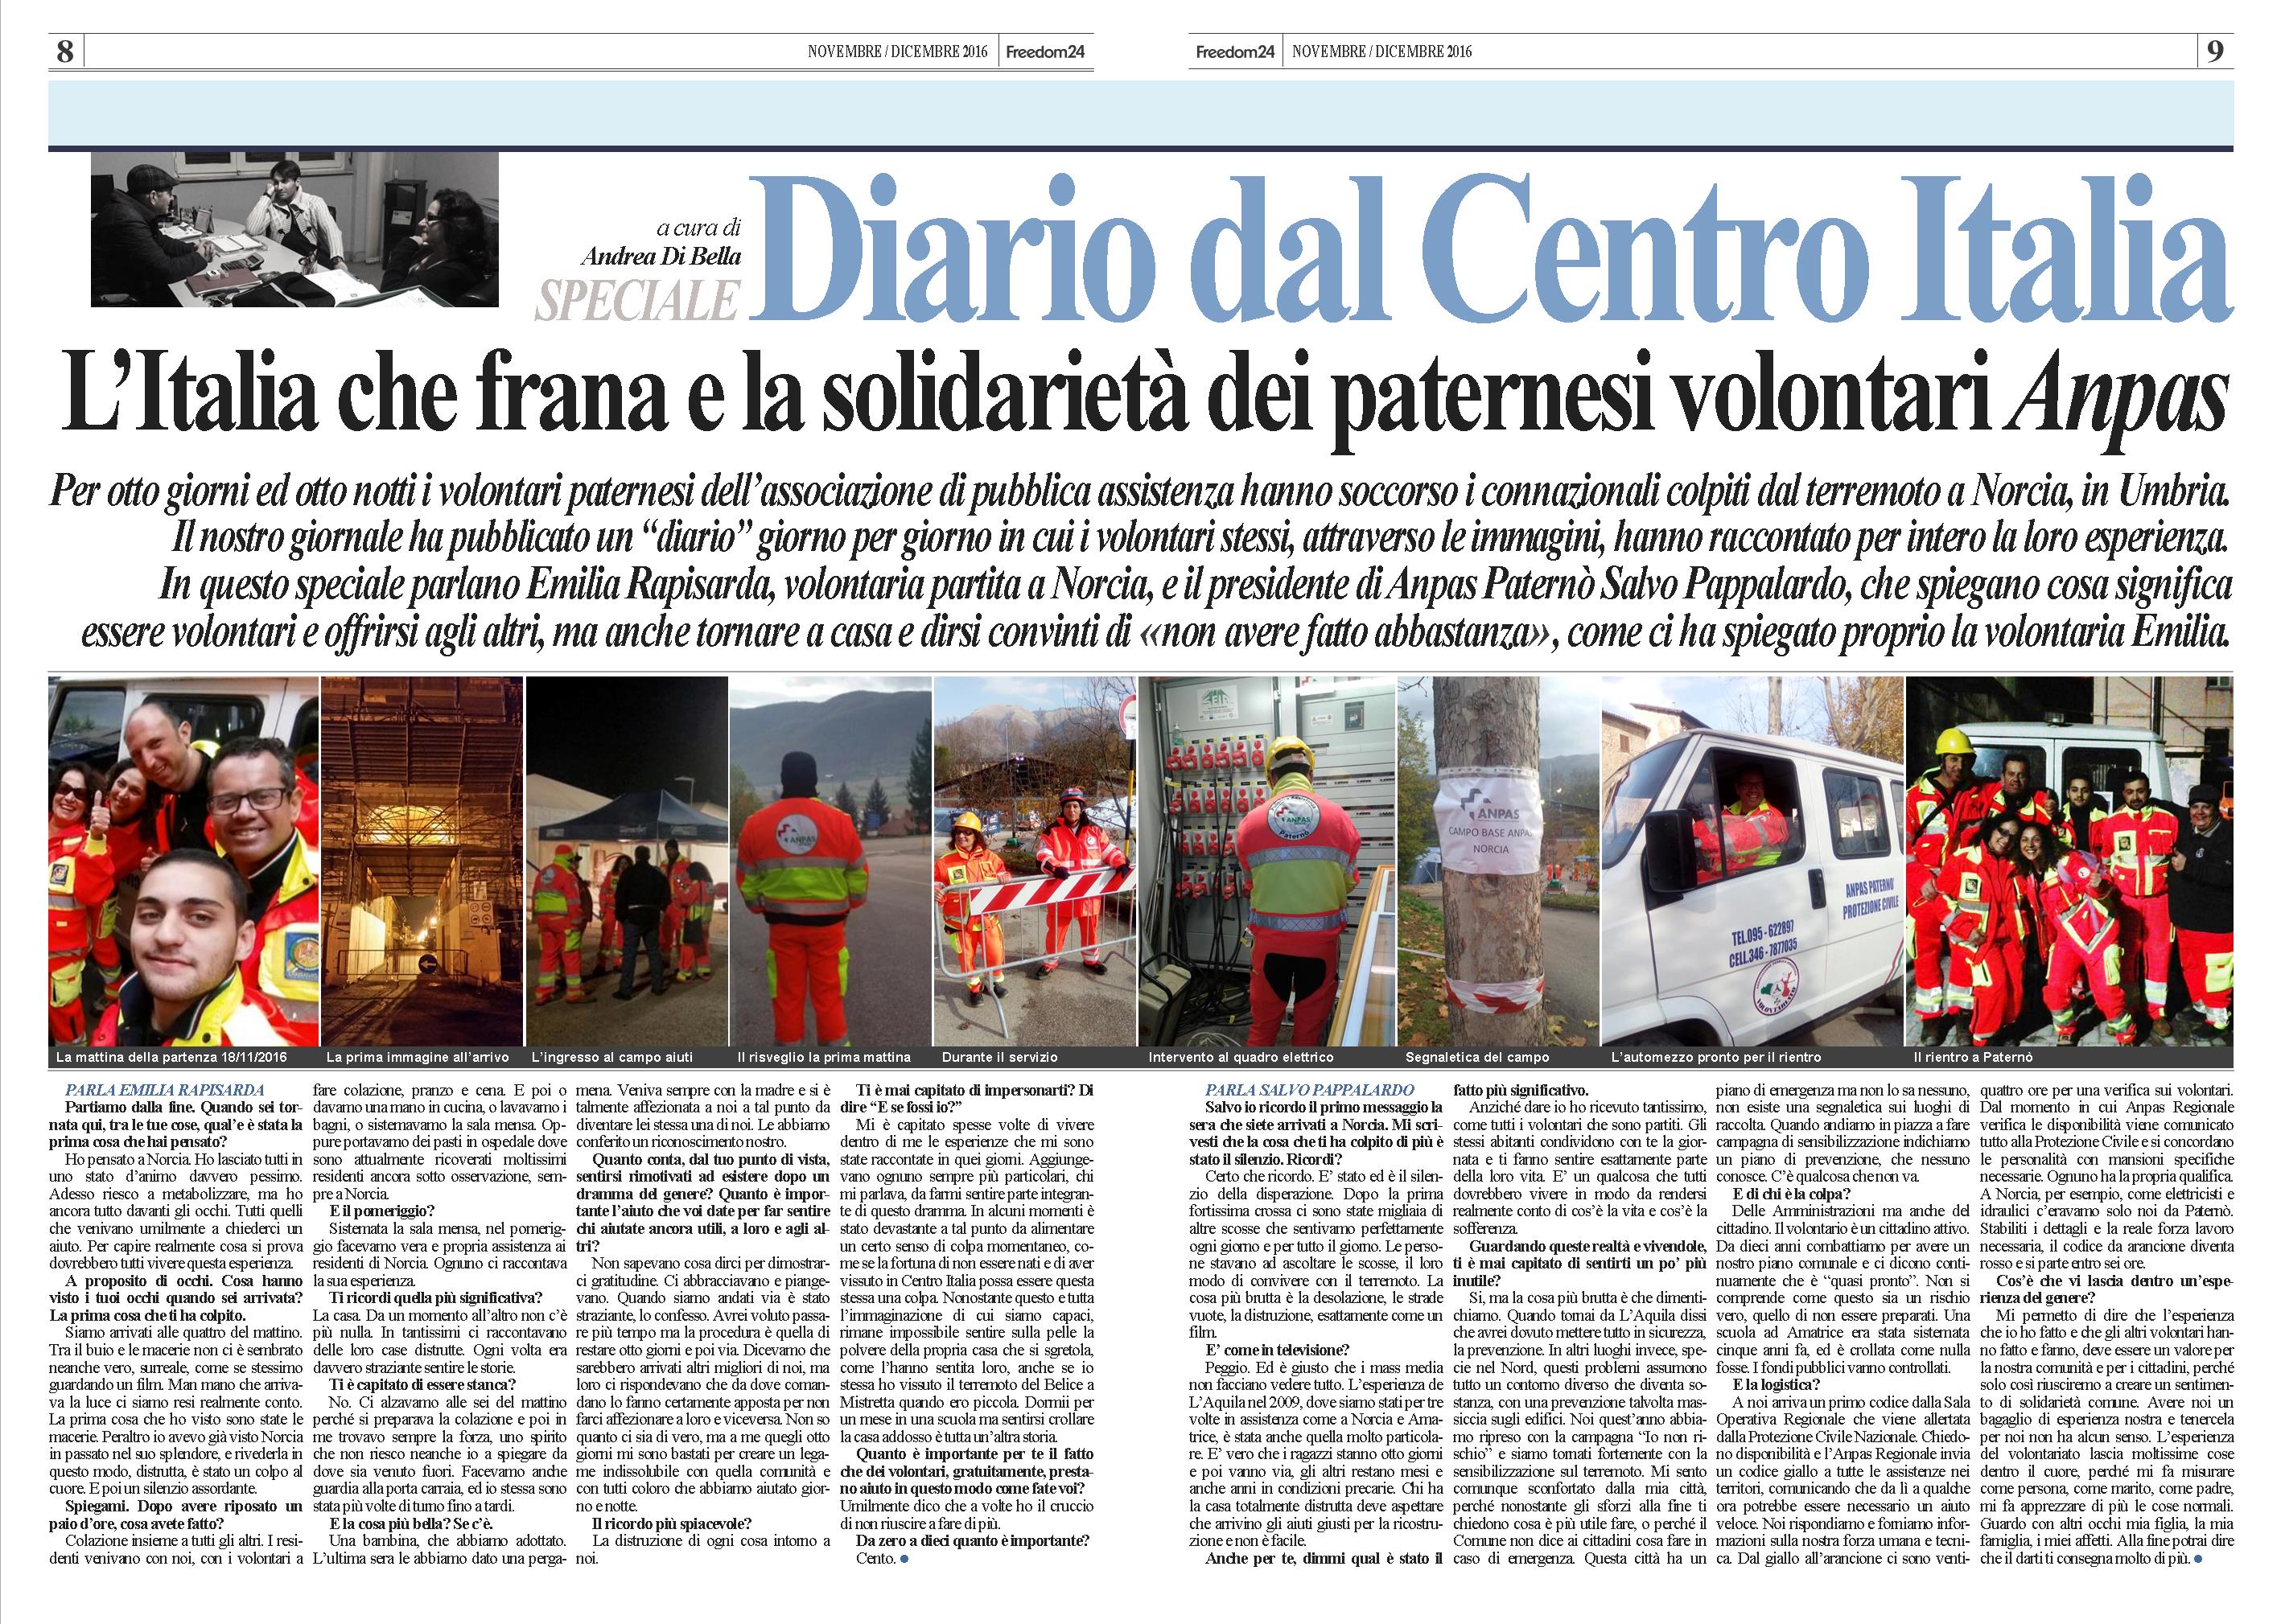 Lo speciale "Diario dal Centro Italia" pubblicato sull'edizione freepress di Freedom24 lo scorso 22 dicembre e distribuito nel comprensorio etneo. LEGGI IN PDF A QUESTO LINK